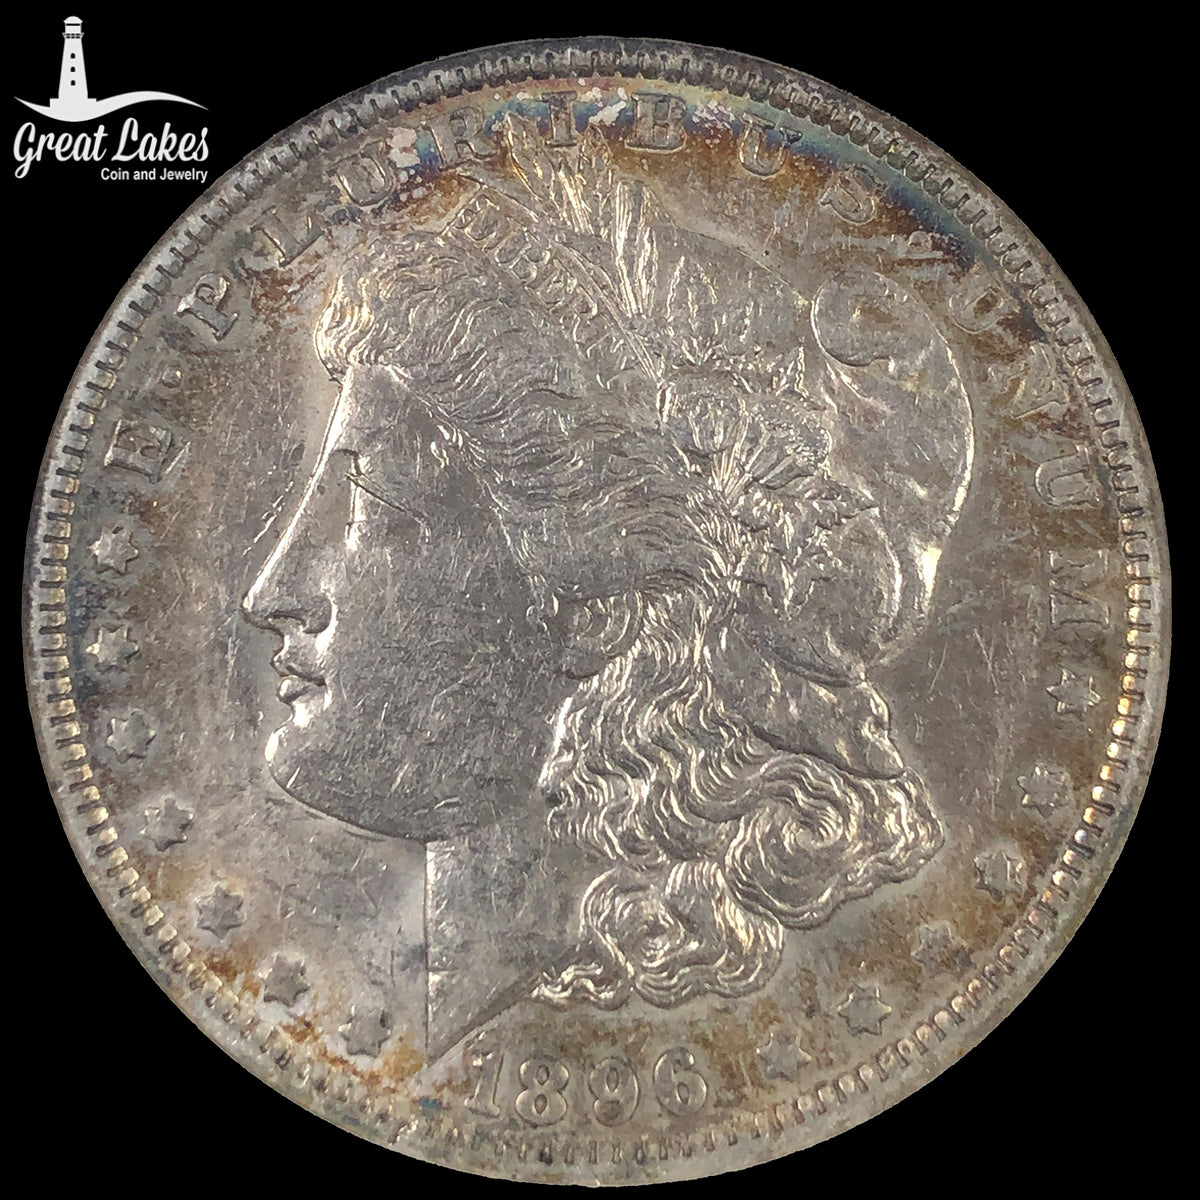 1896-O Morgan Silver Dollar ANACS AU55